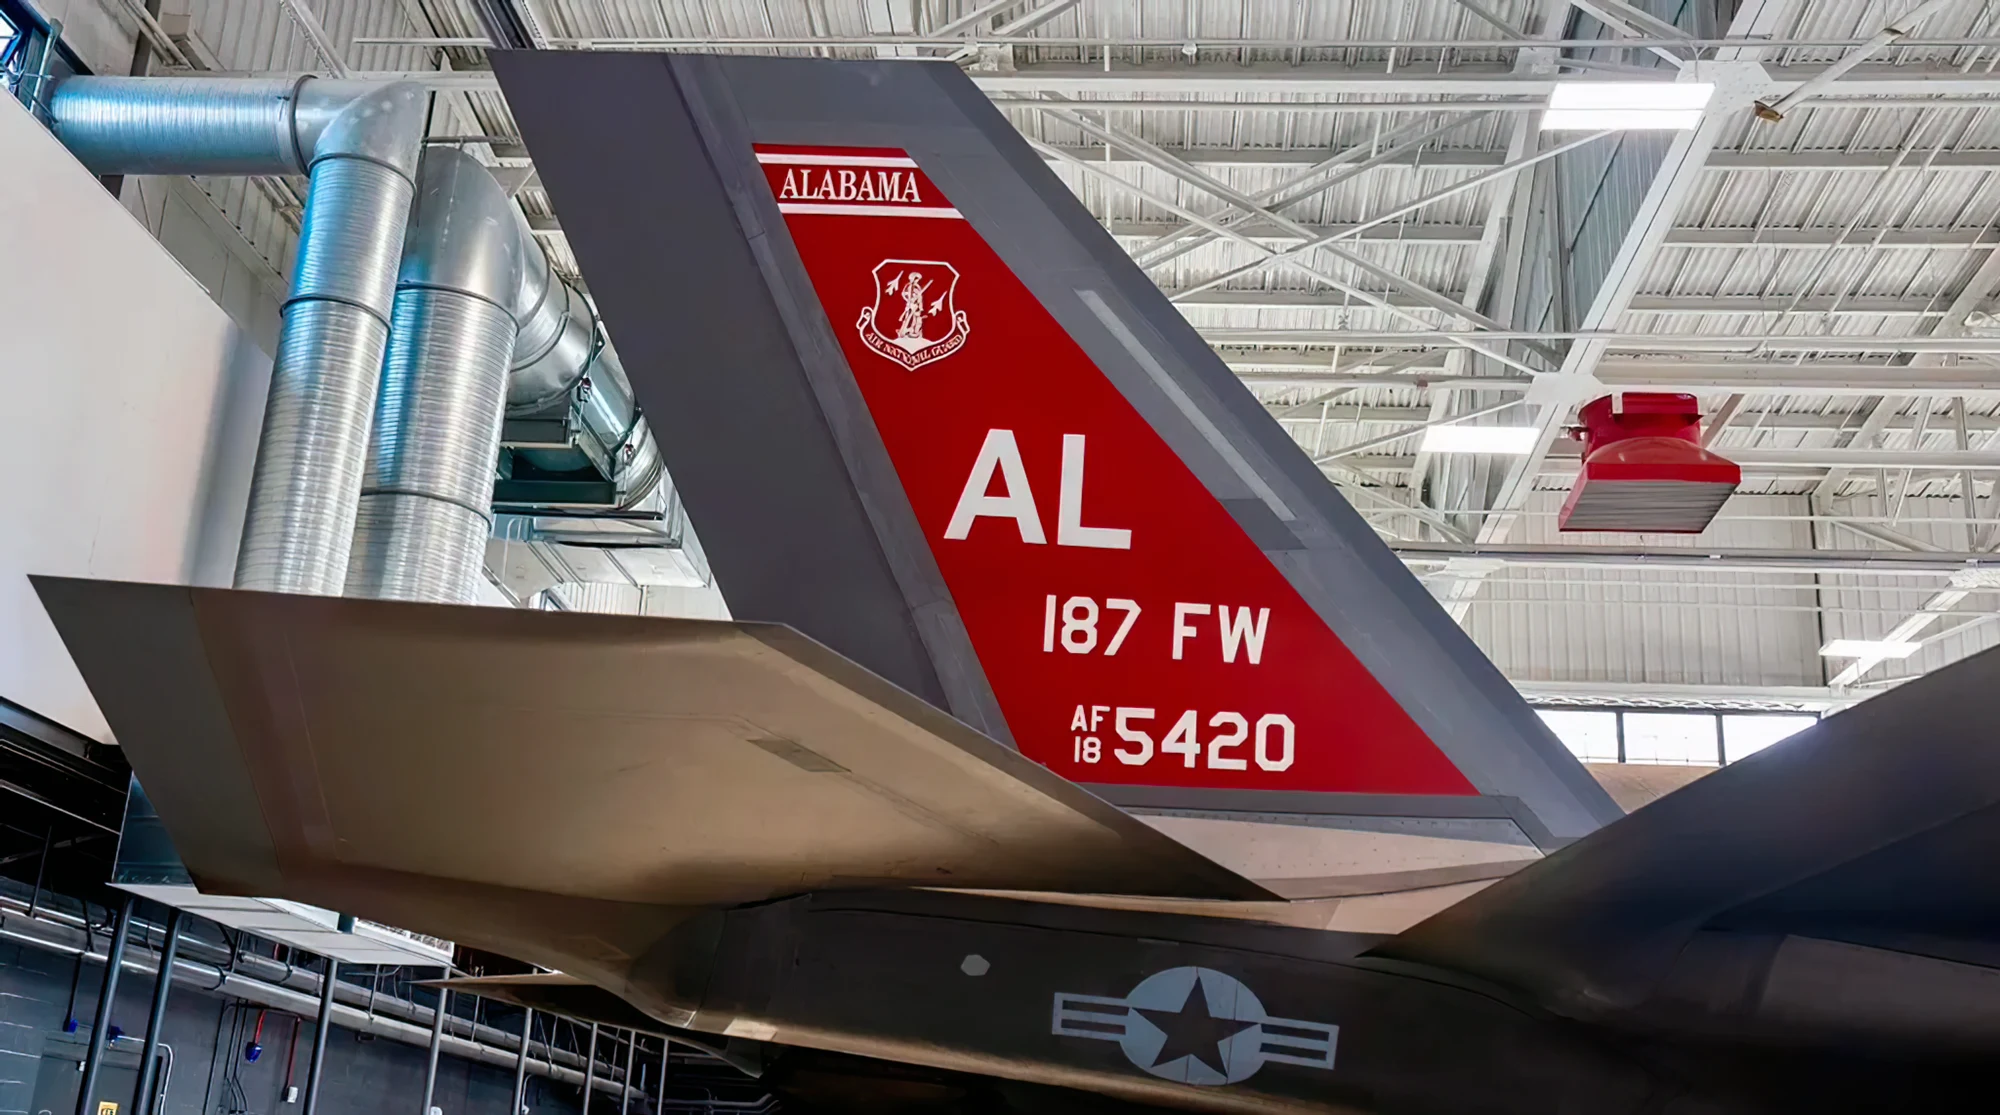 Alabama ANG continúa el legado de Red Tail con el F-35